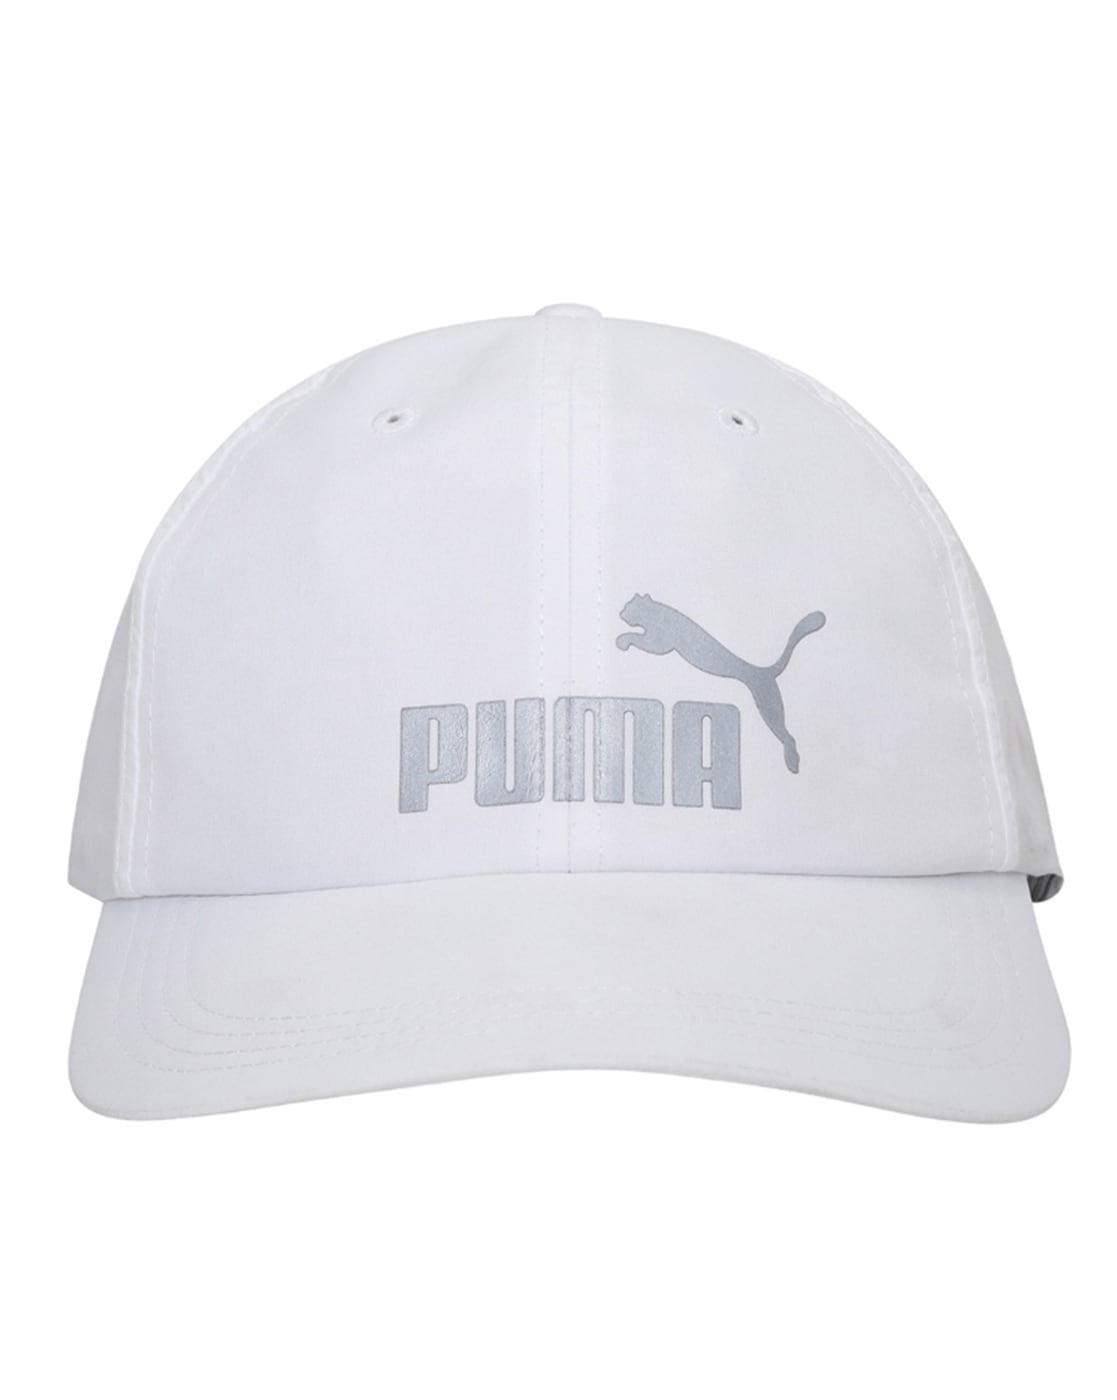 hat einen supergünstigen Ausverkauf! Buy White Caps & for Online Hats Men Puma by